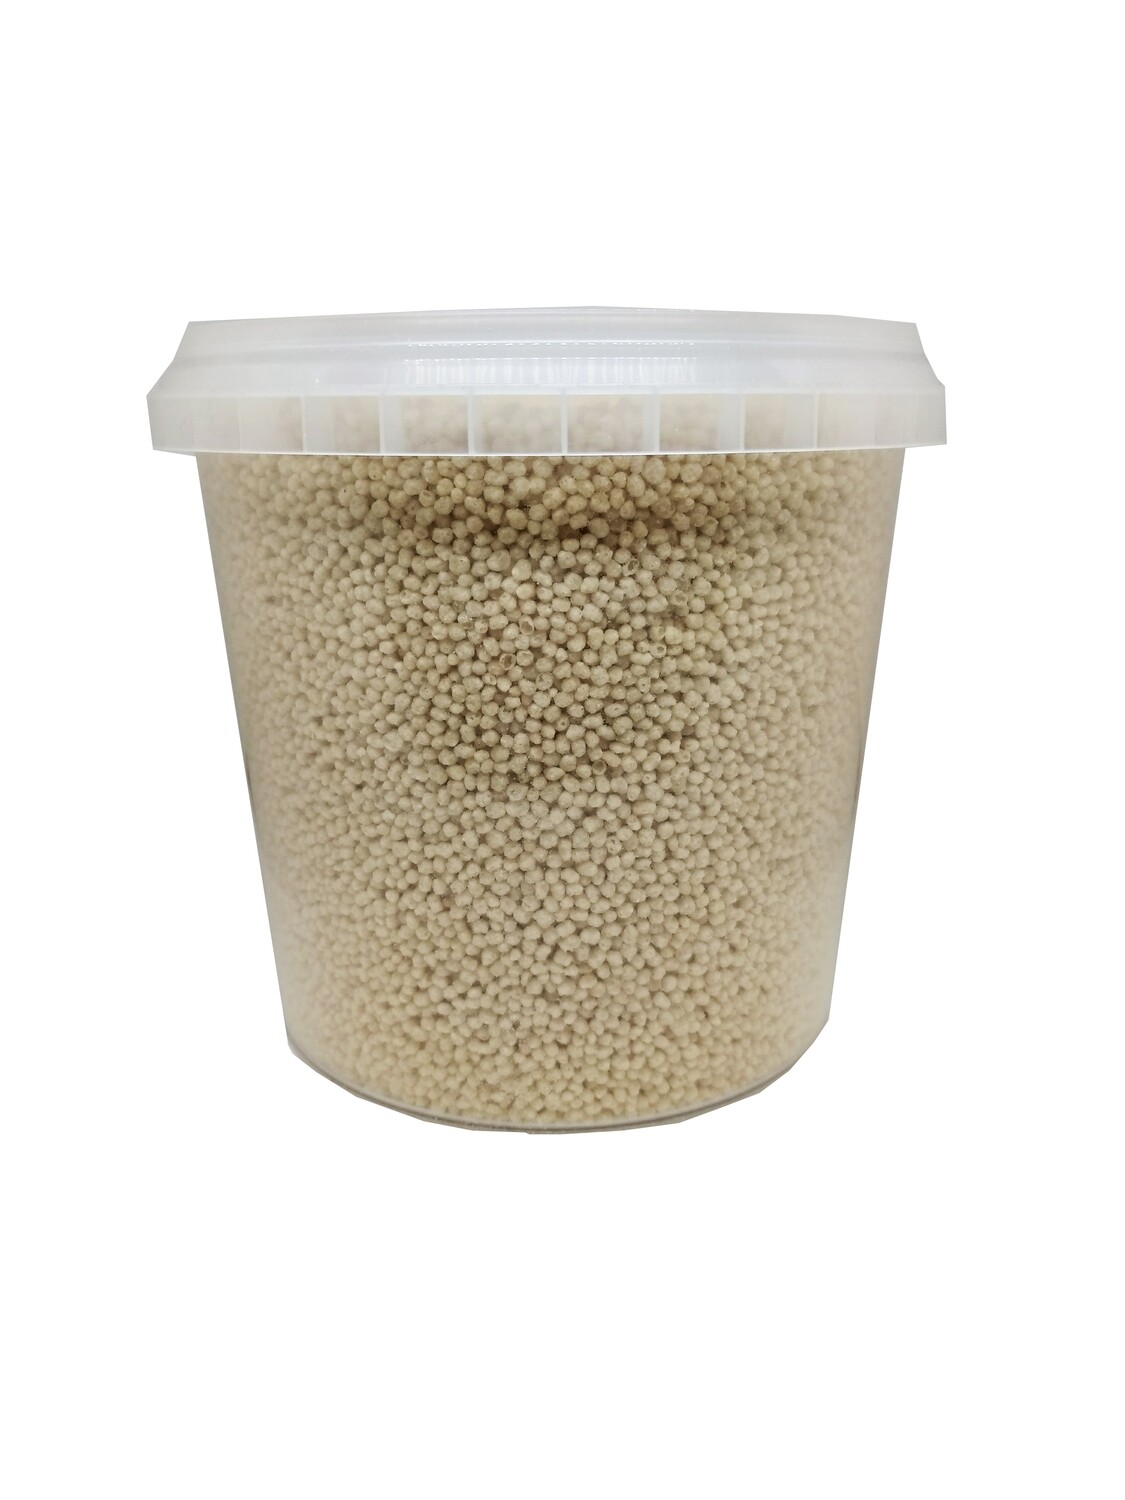 Кульки хрусткі рисові 2 мм 0,25 кг